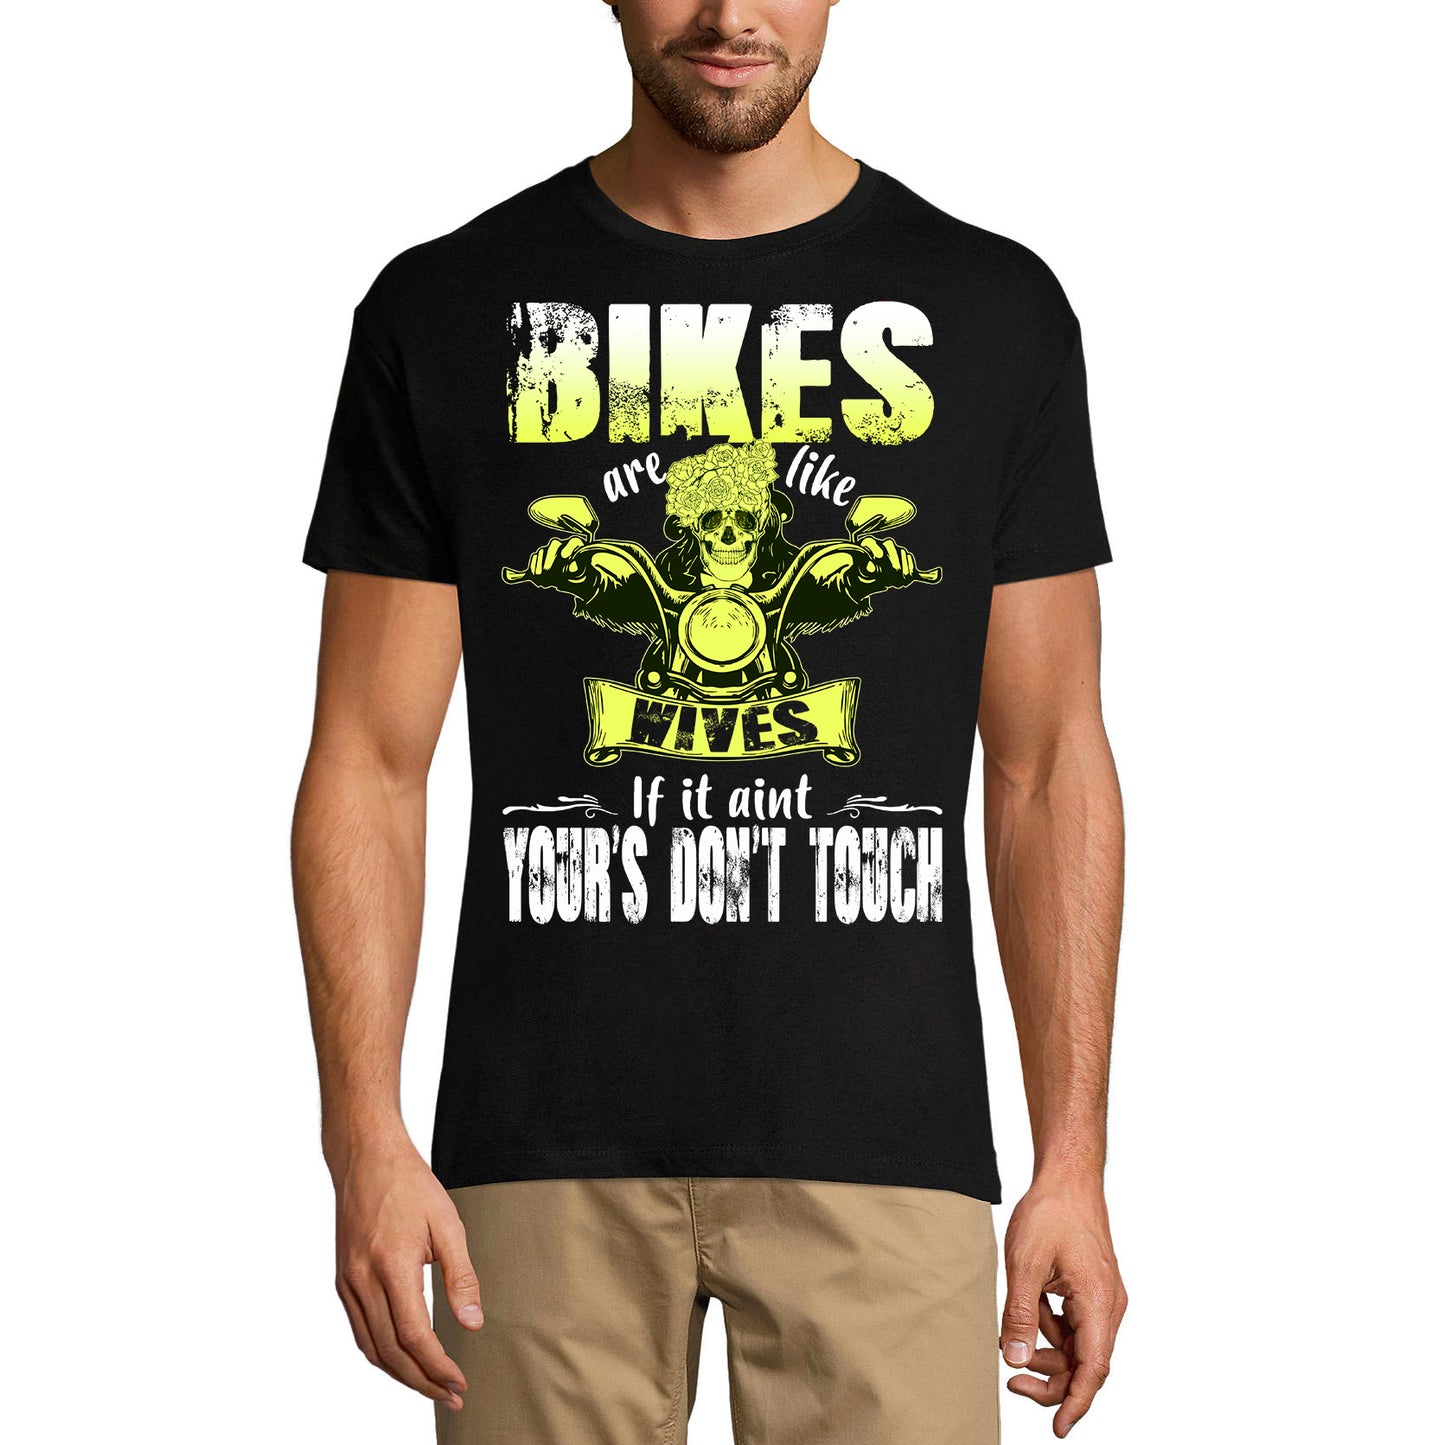 ULTRABASIC Men's Novelty T-Shirt Bikes are Like Wives - Funny Biker Tee Shirt